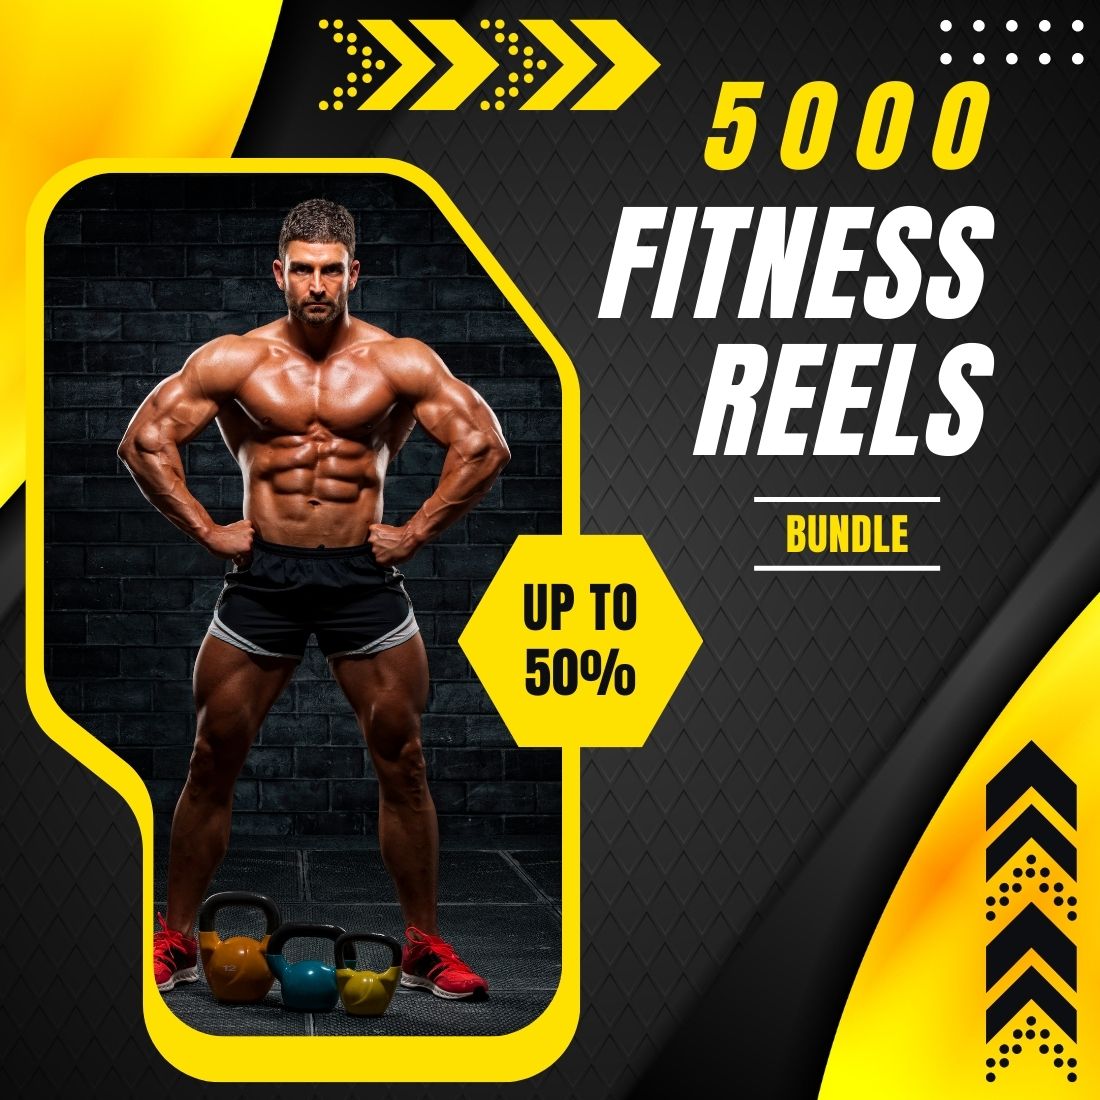 gym reel bundle 5000 reel bundle fitness reel bundle 5000 reel bundle exercise reel bundle 5000 reel bundle 1 635